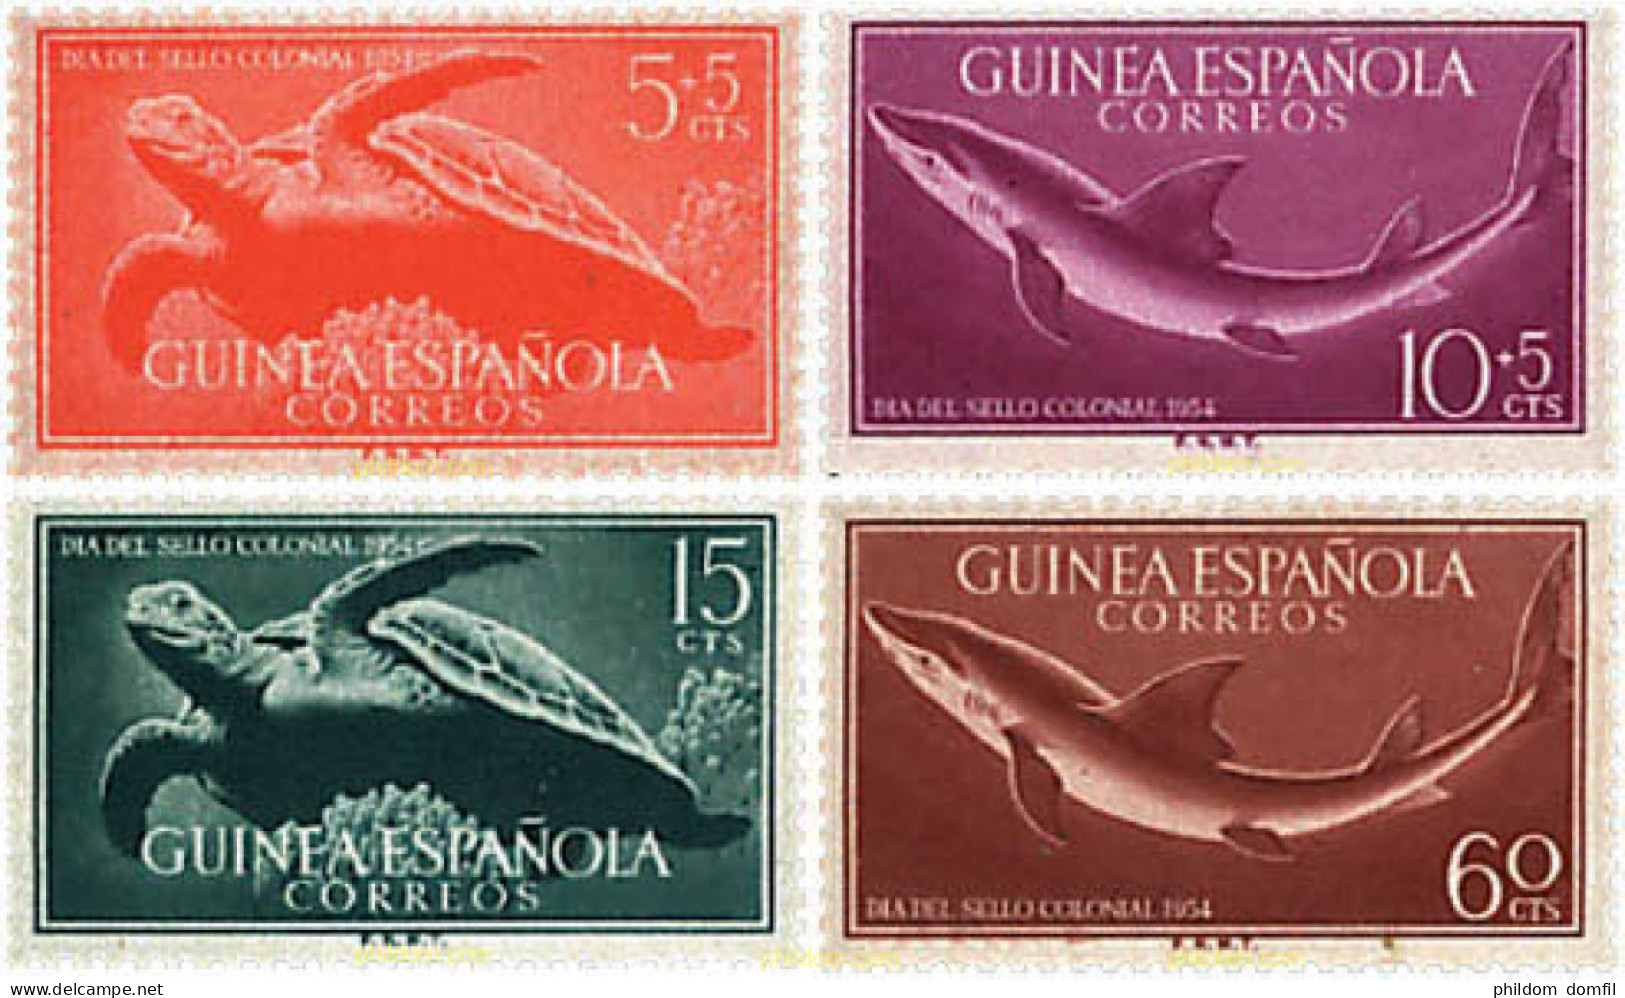 63389 MNH GUINEA ESPAÑOLA 1954 DIA DEL SELLO - Guinea Española